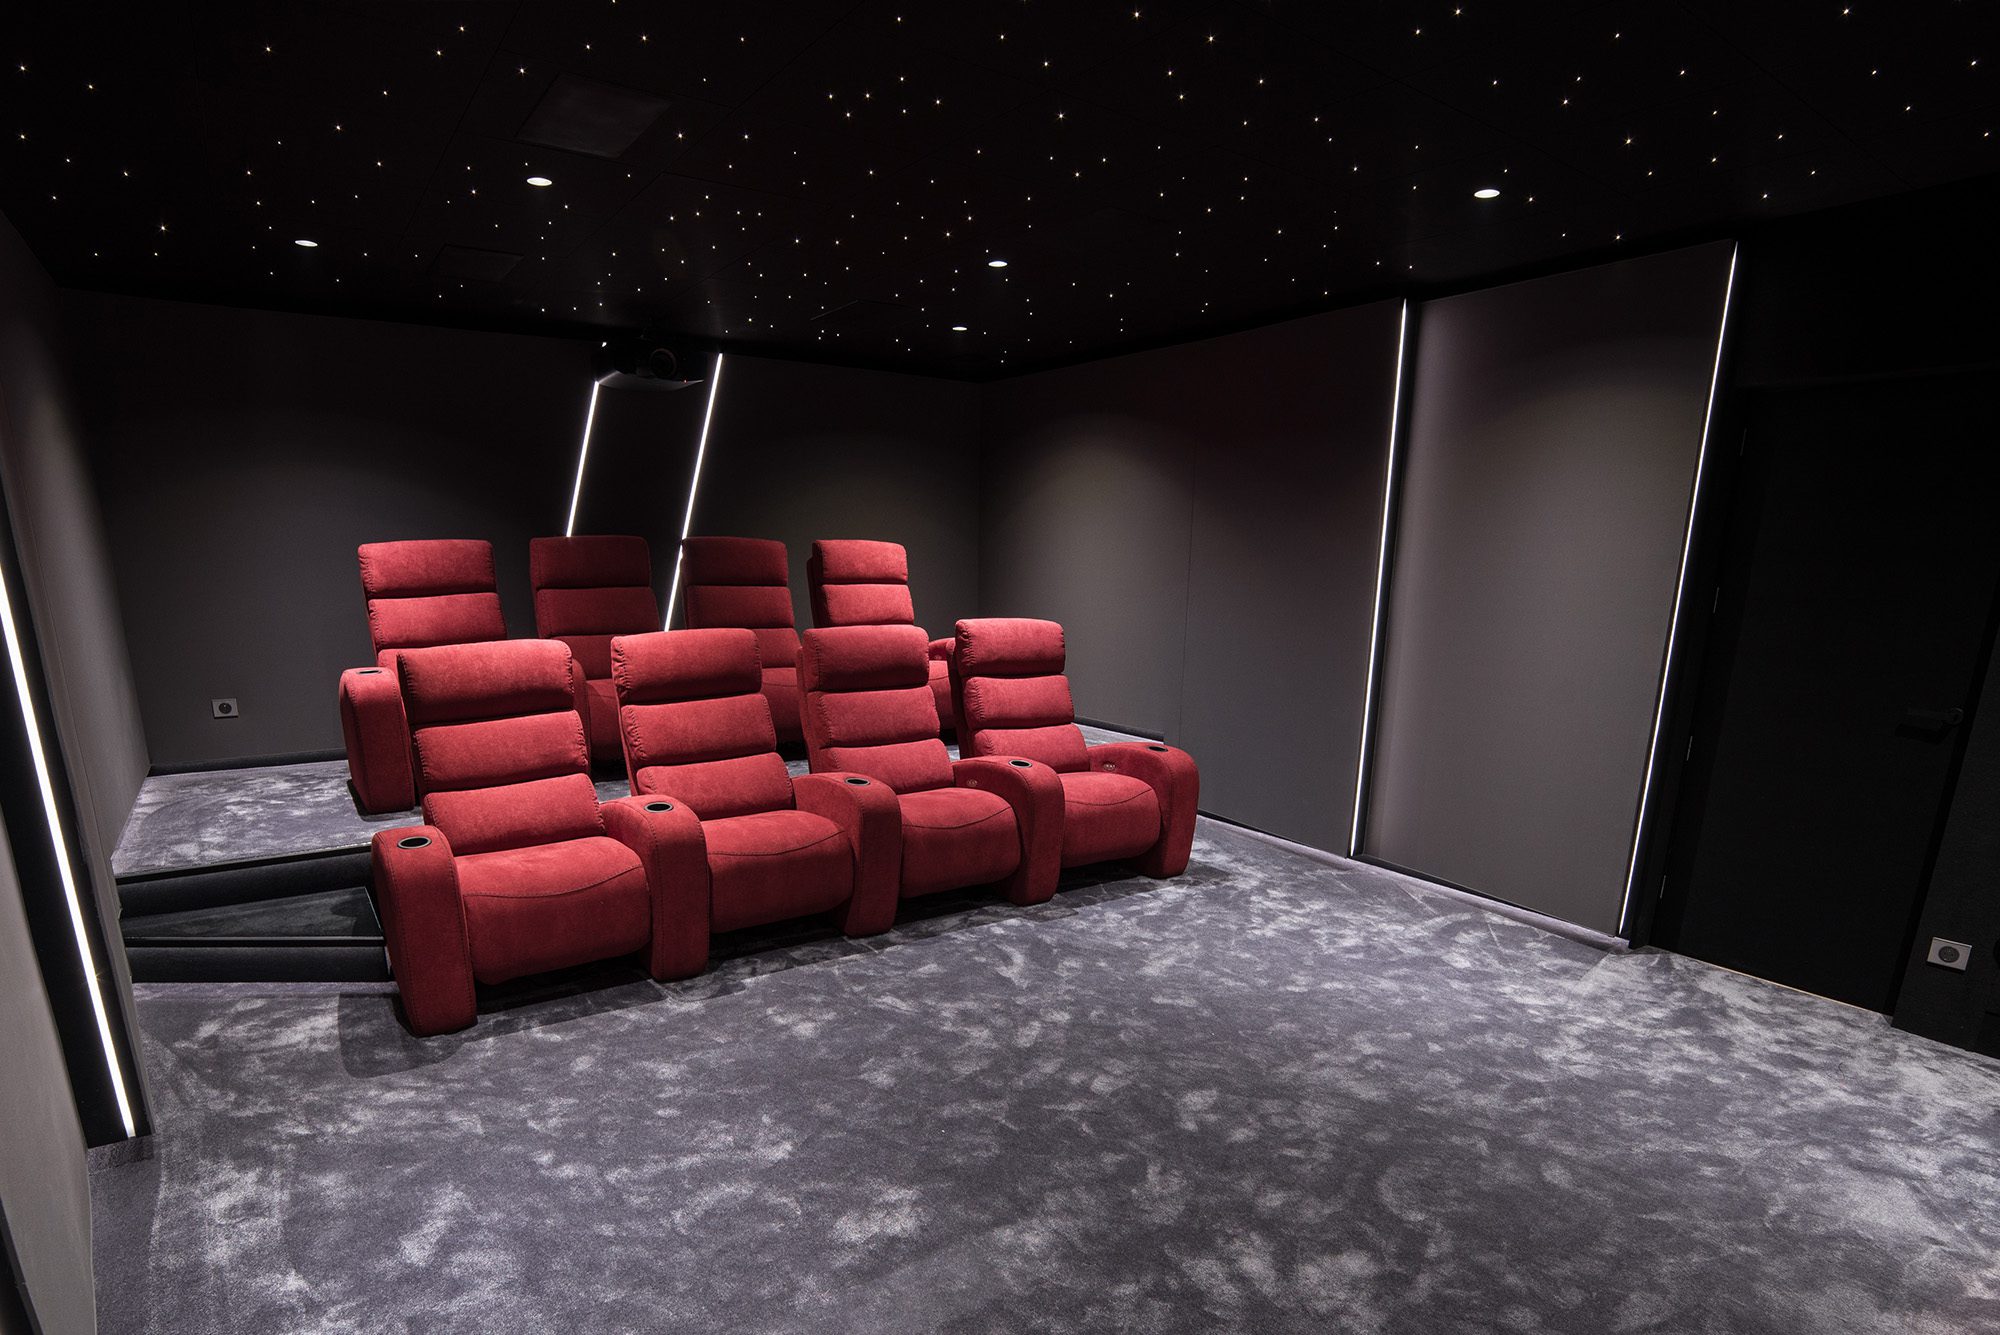 Salle de cinema privée 35m2 rouge 9 places, fauteuils en tissu rouge, tissu tendu gris anthraacite, avant-scène, ciel étoilé, spots, panneaux lumineux au Havre